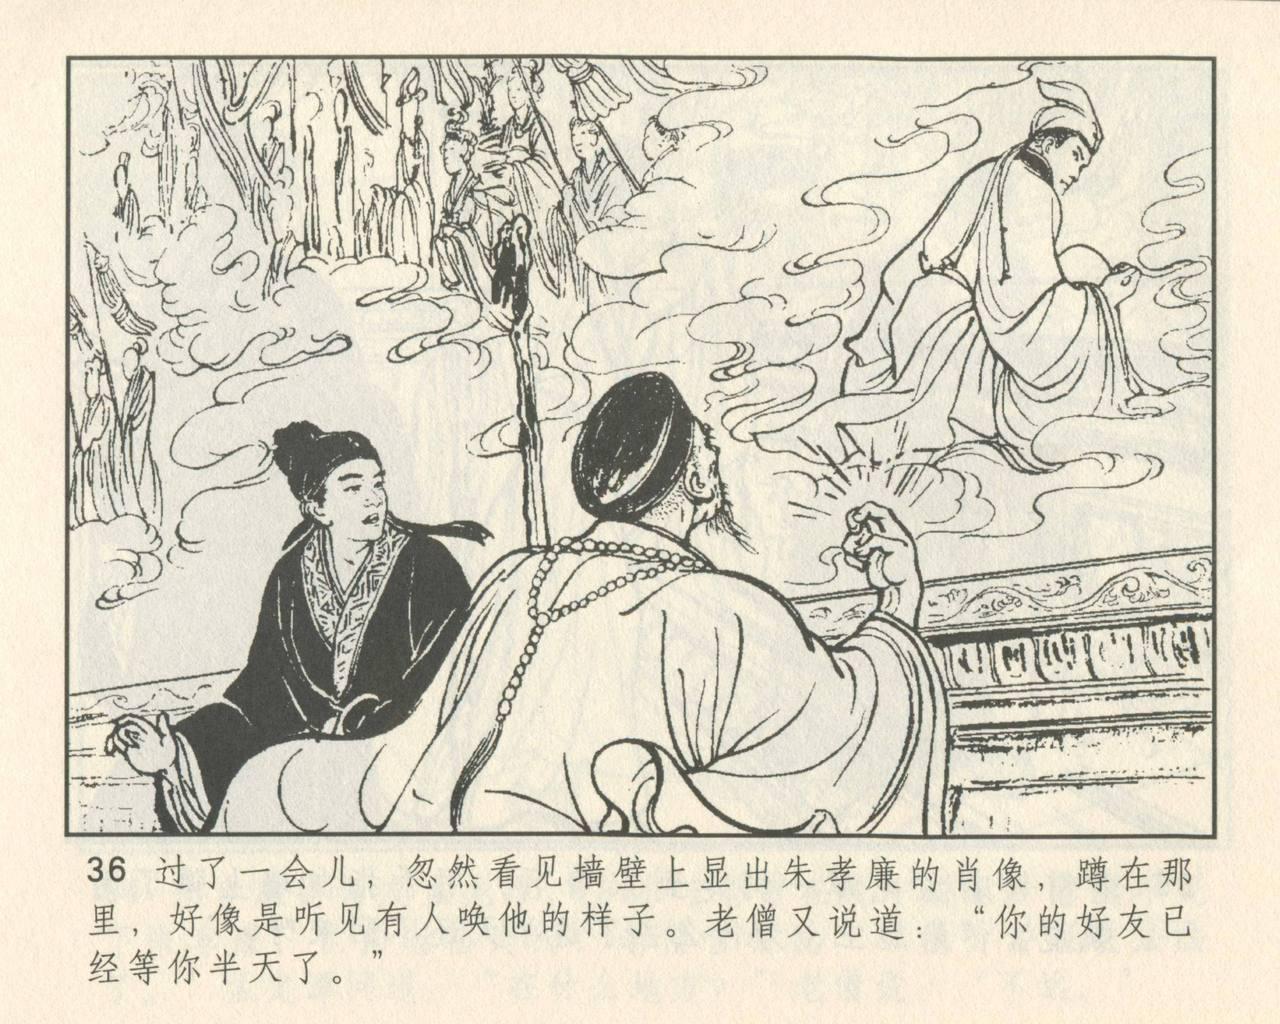 聊斋志异 张玮等绘 天津人民美术出版社 卷二十一 ~ 三十 39